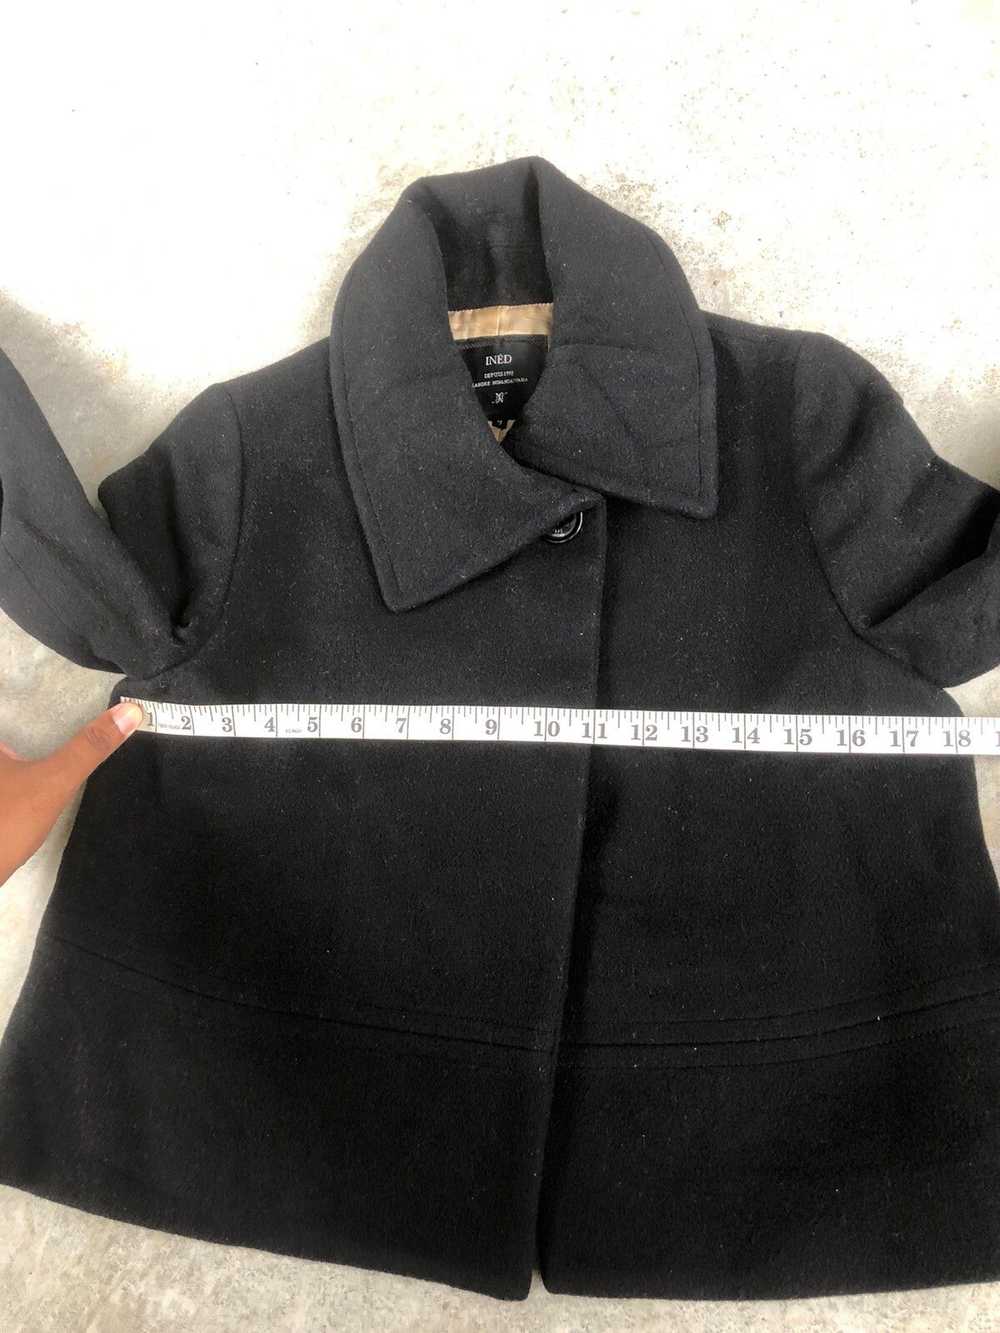 Yohji Yamamoto INED Cropped Jacket Wool Jacket Yo… - image 12